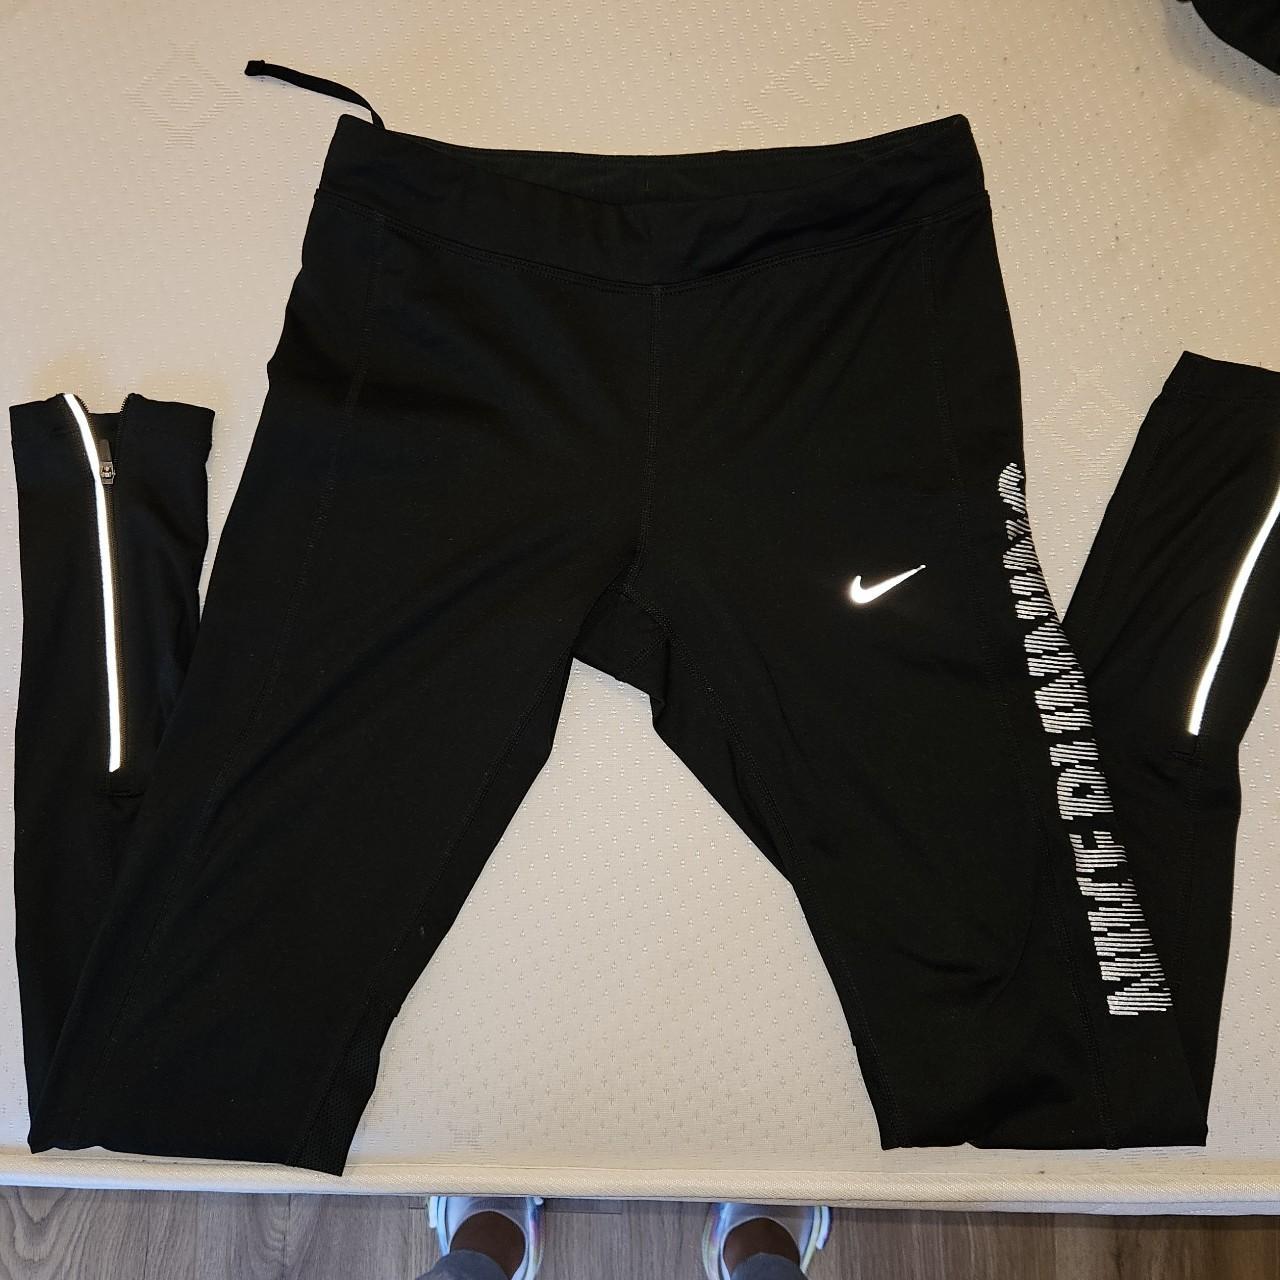 Nike dri-fit leggings - Full-length leggings with - Depop